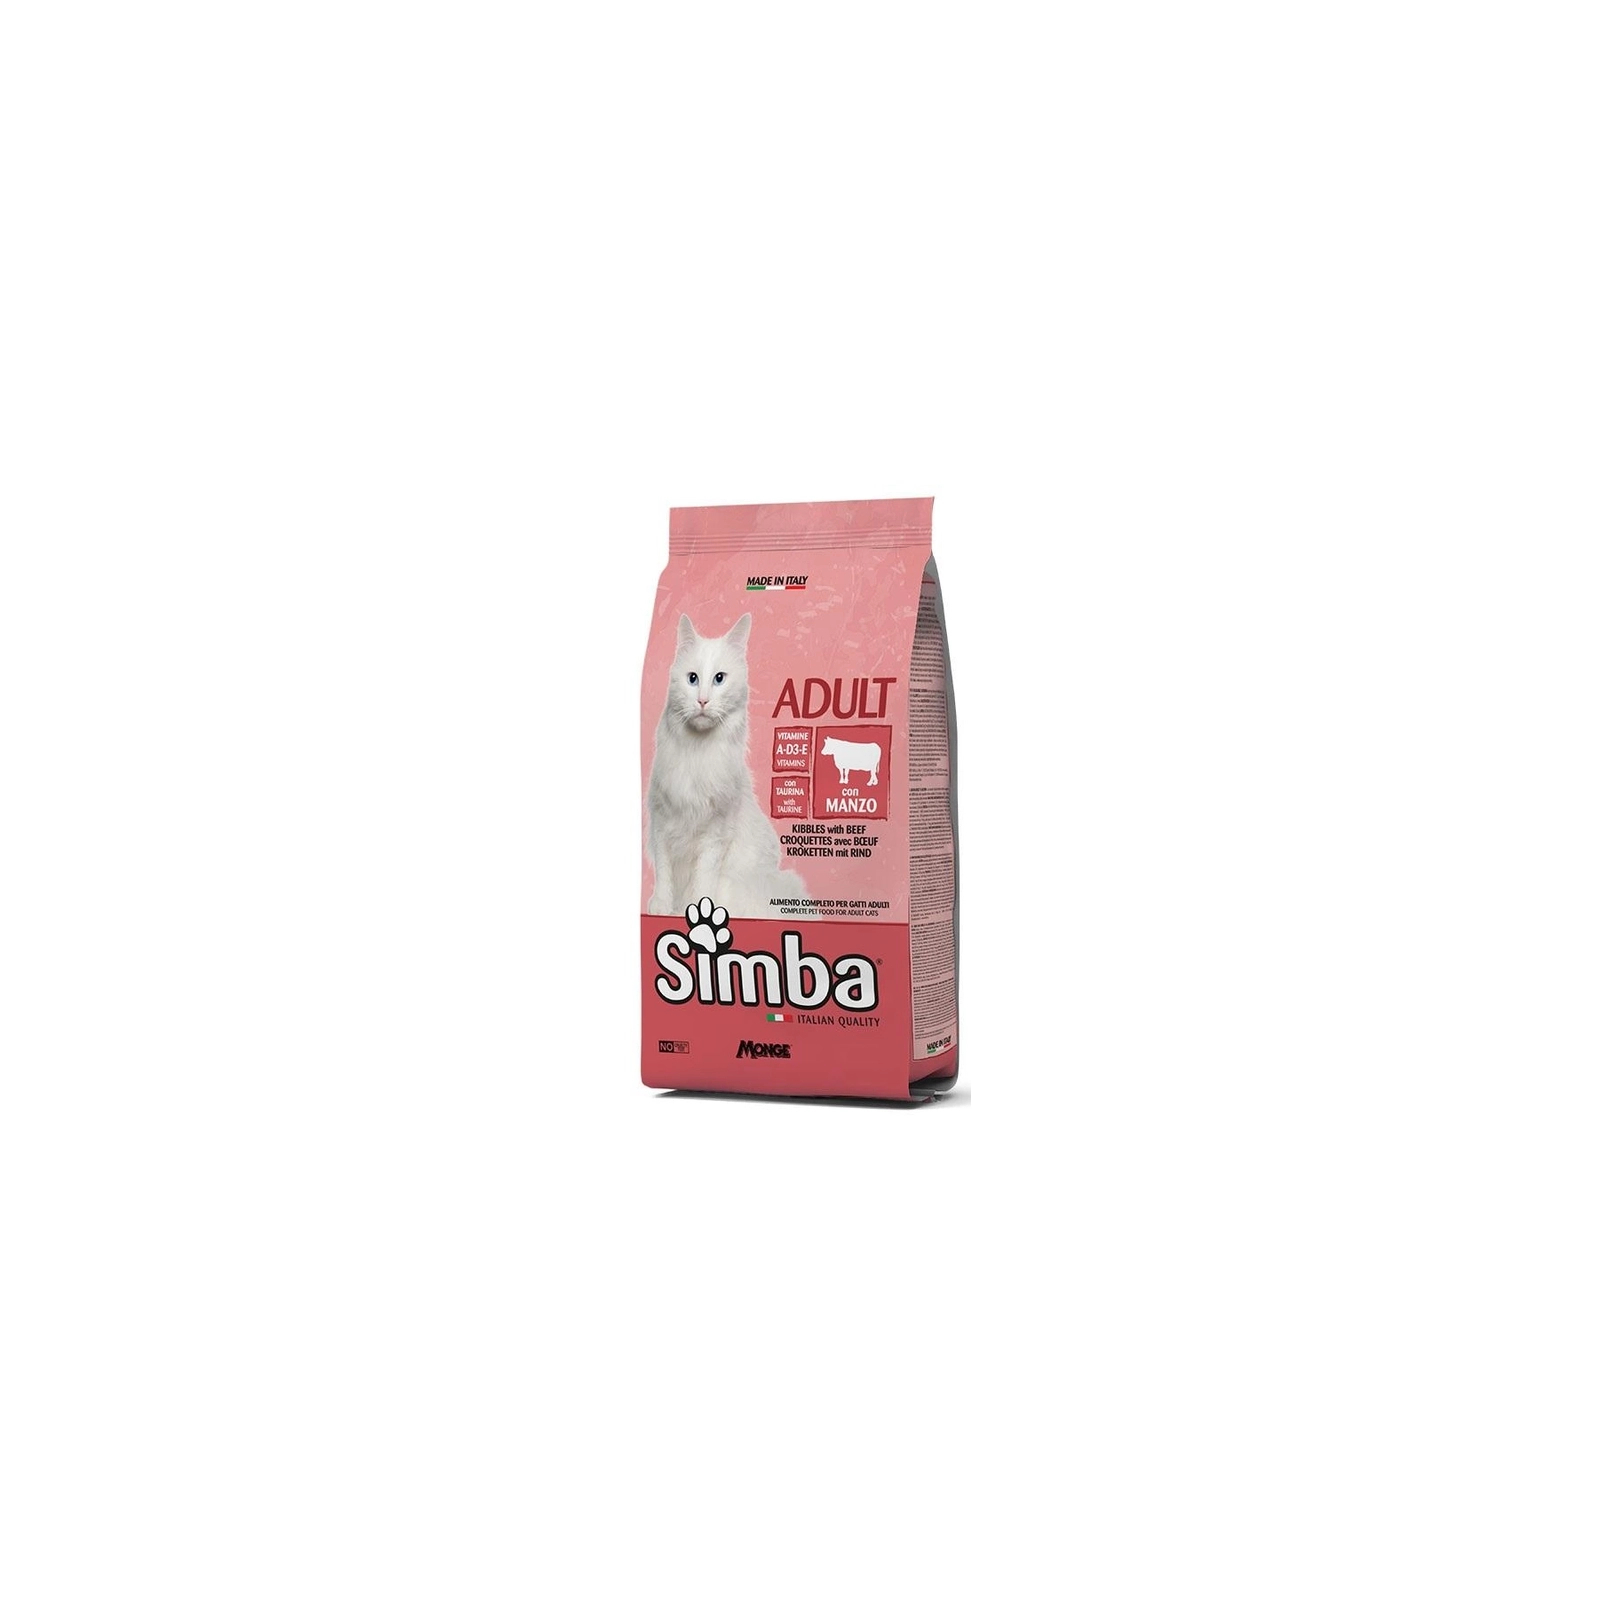 Сухой корм для кошек Simba Cat говядина 5 кг (8009470156020)